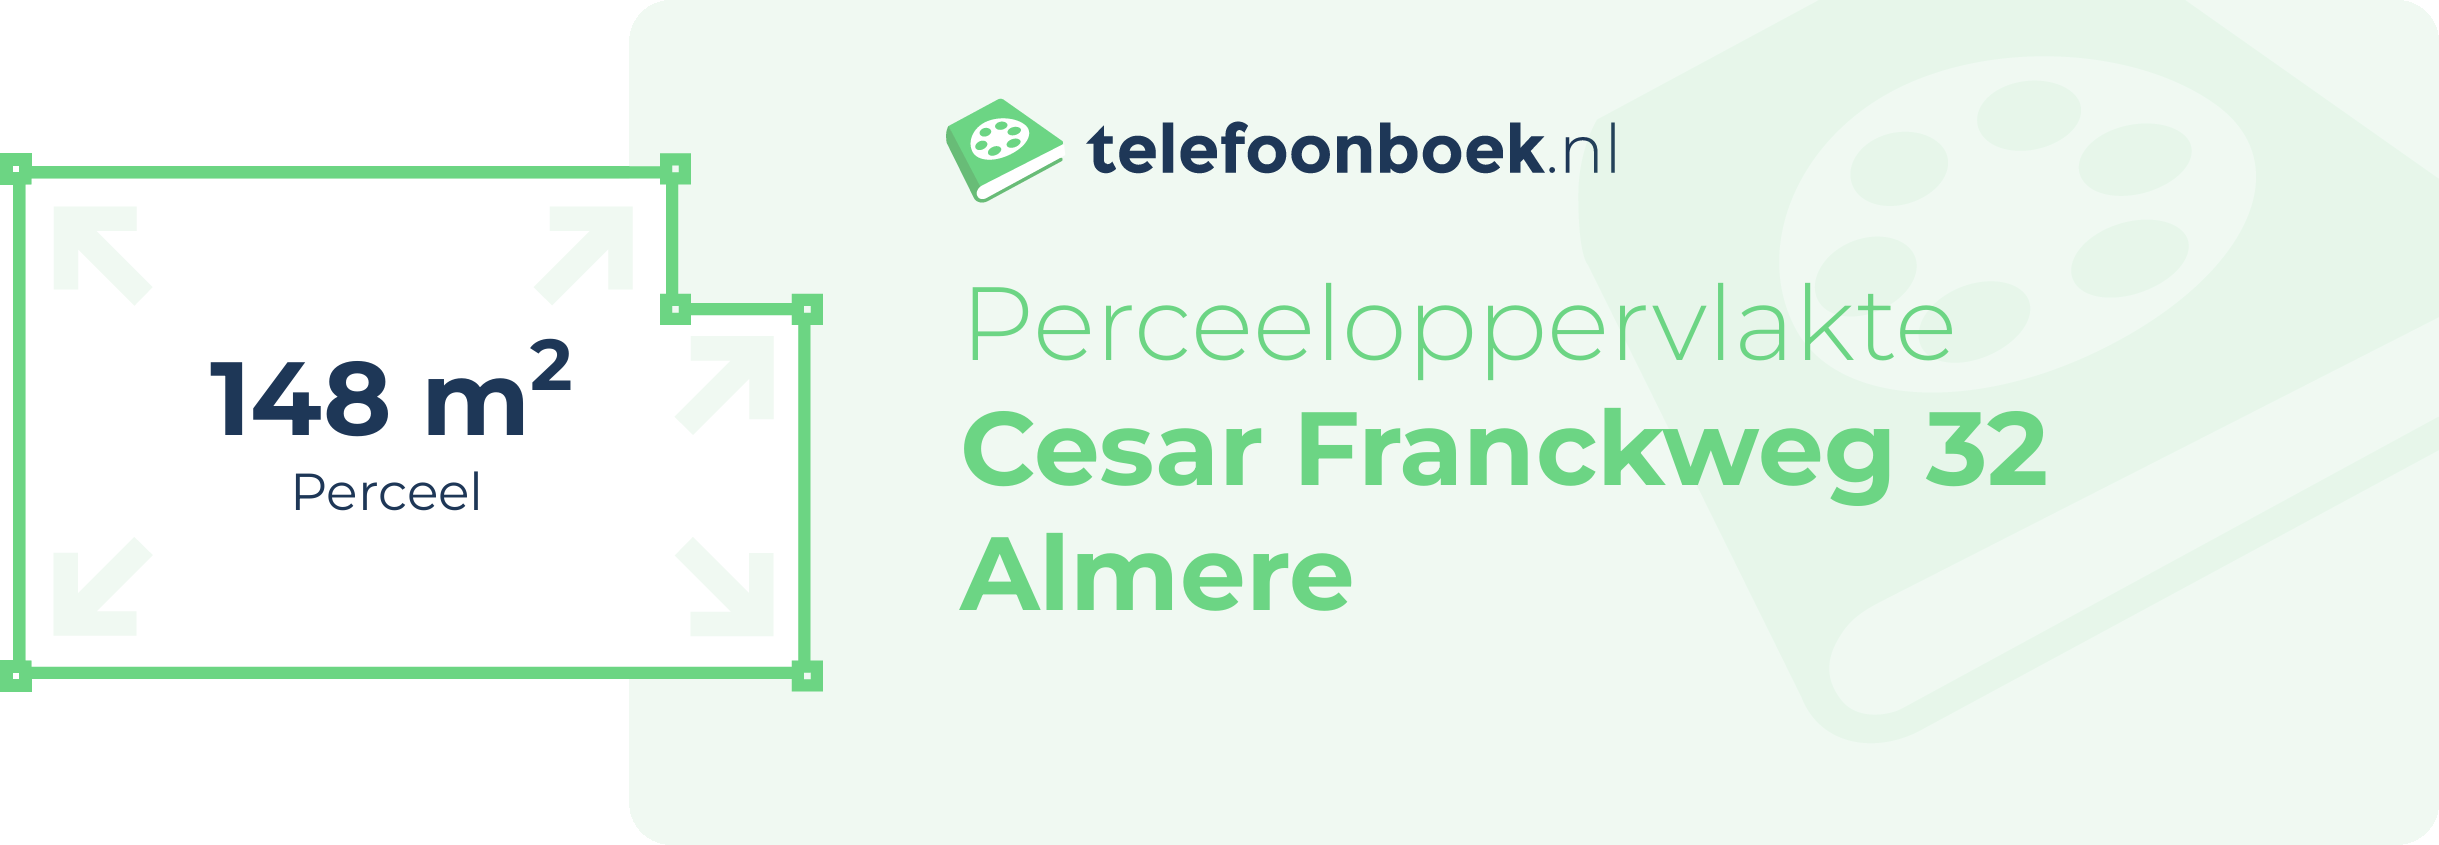 Perceeloppervlakte Cesar Franckweg 32 Almere